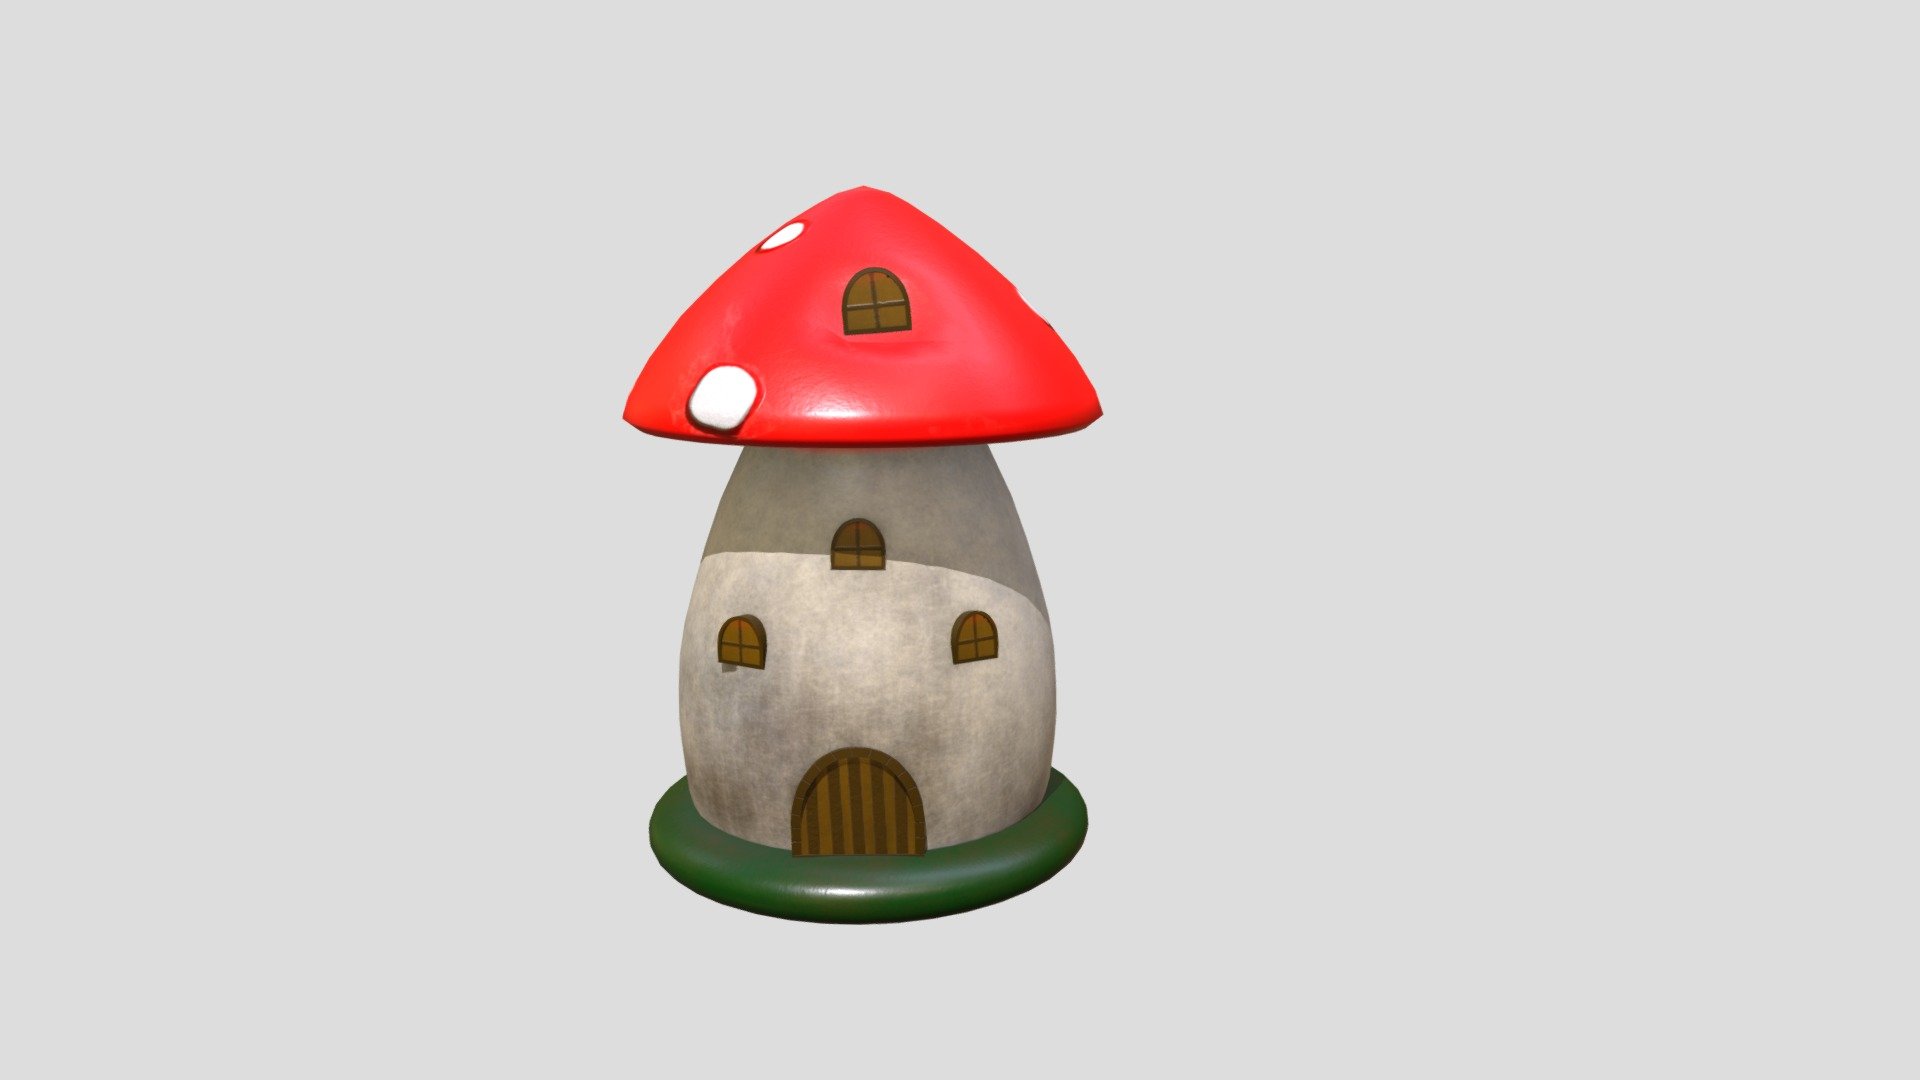 Mushroom house for a fairy garden - Mushroom House Fairy Garden - 3D model by jgianelli 3d model